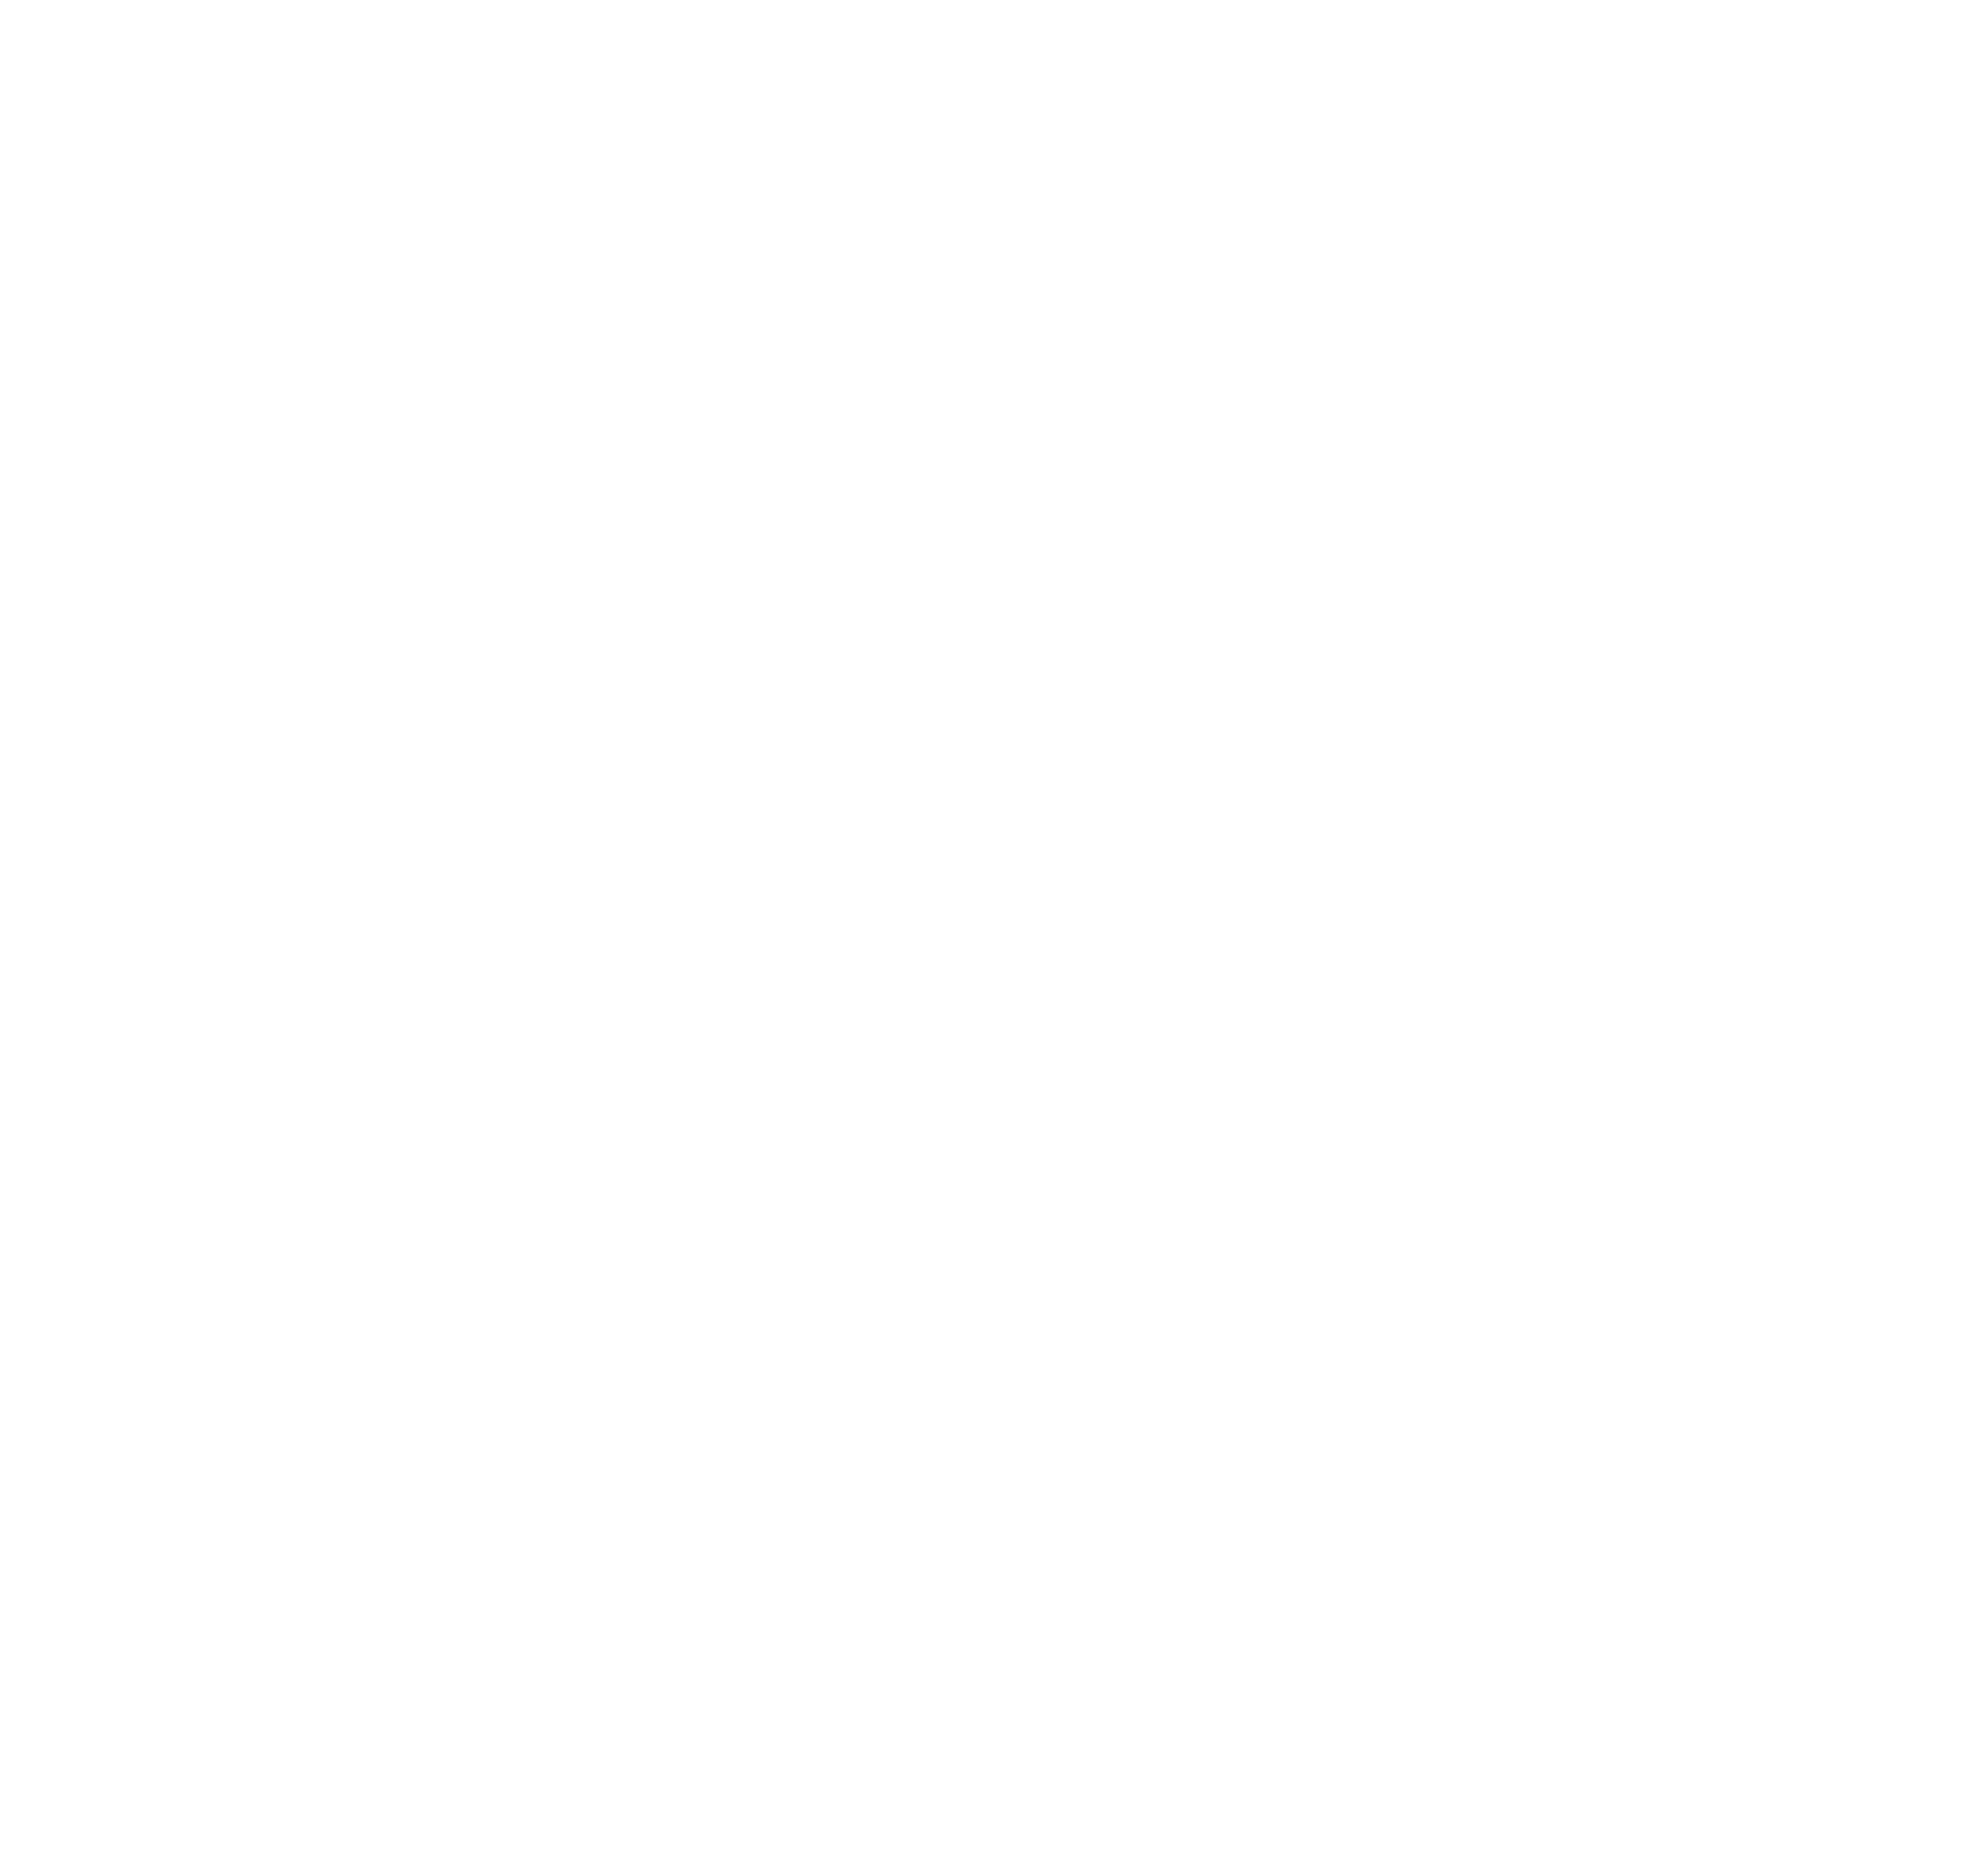 Pub 819 logo scroll